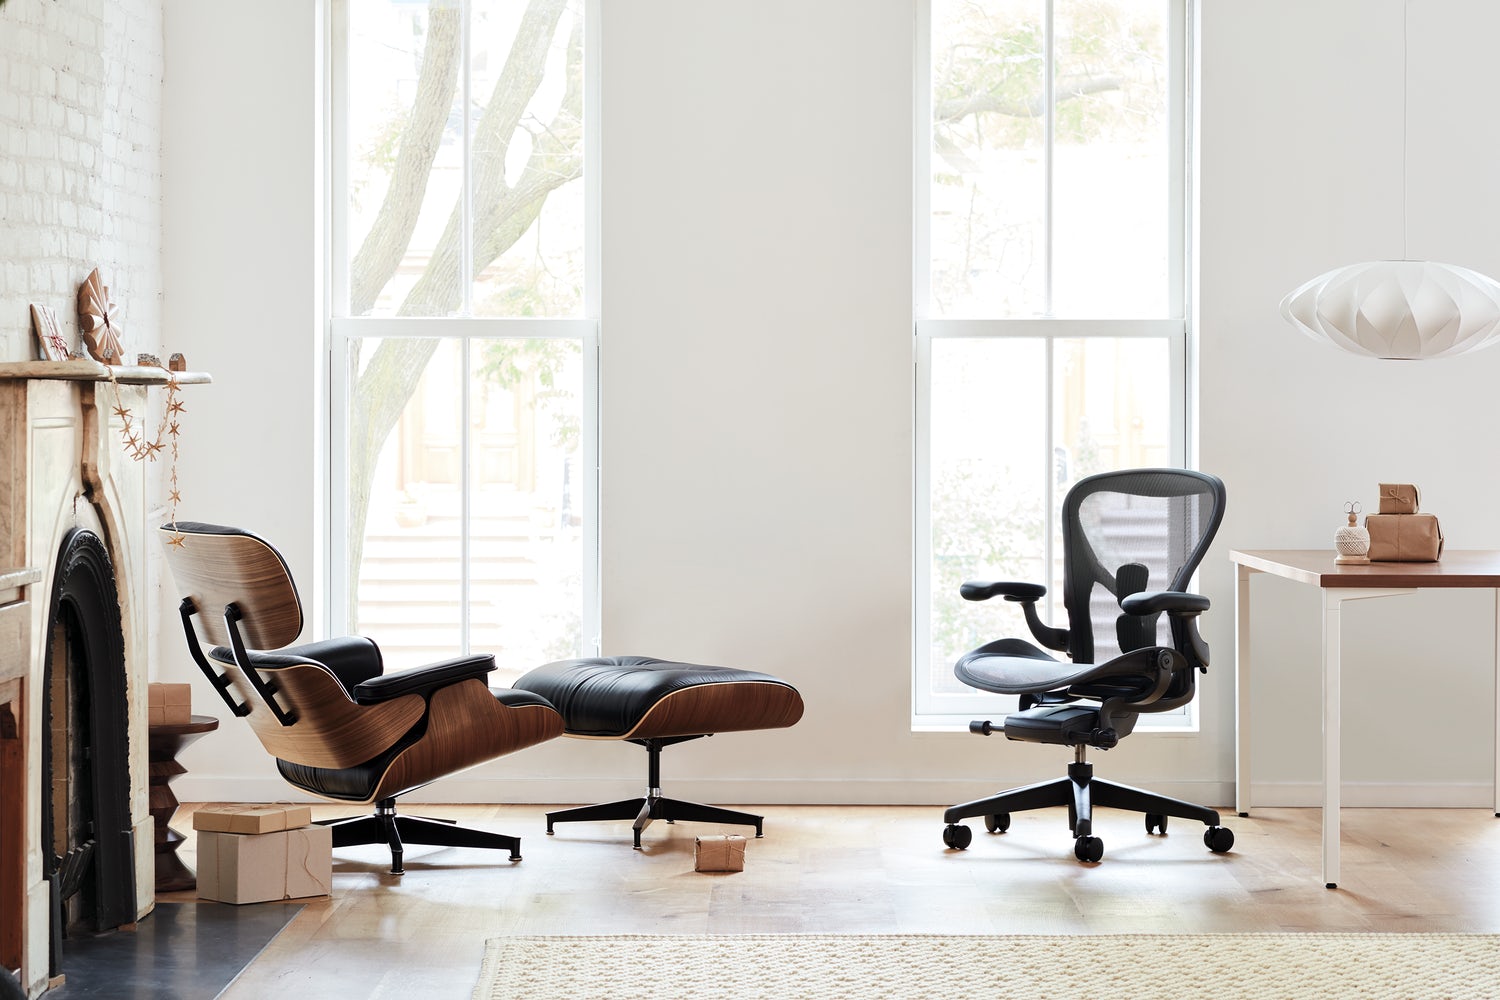 Cùng với Aeron, Eames cũng là một chiếc ghế mang tính biểu tượng của Herman Miller